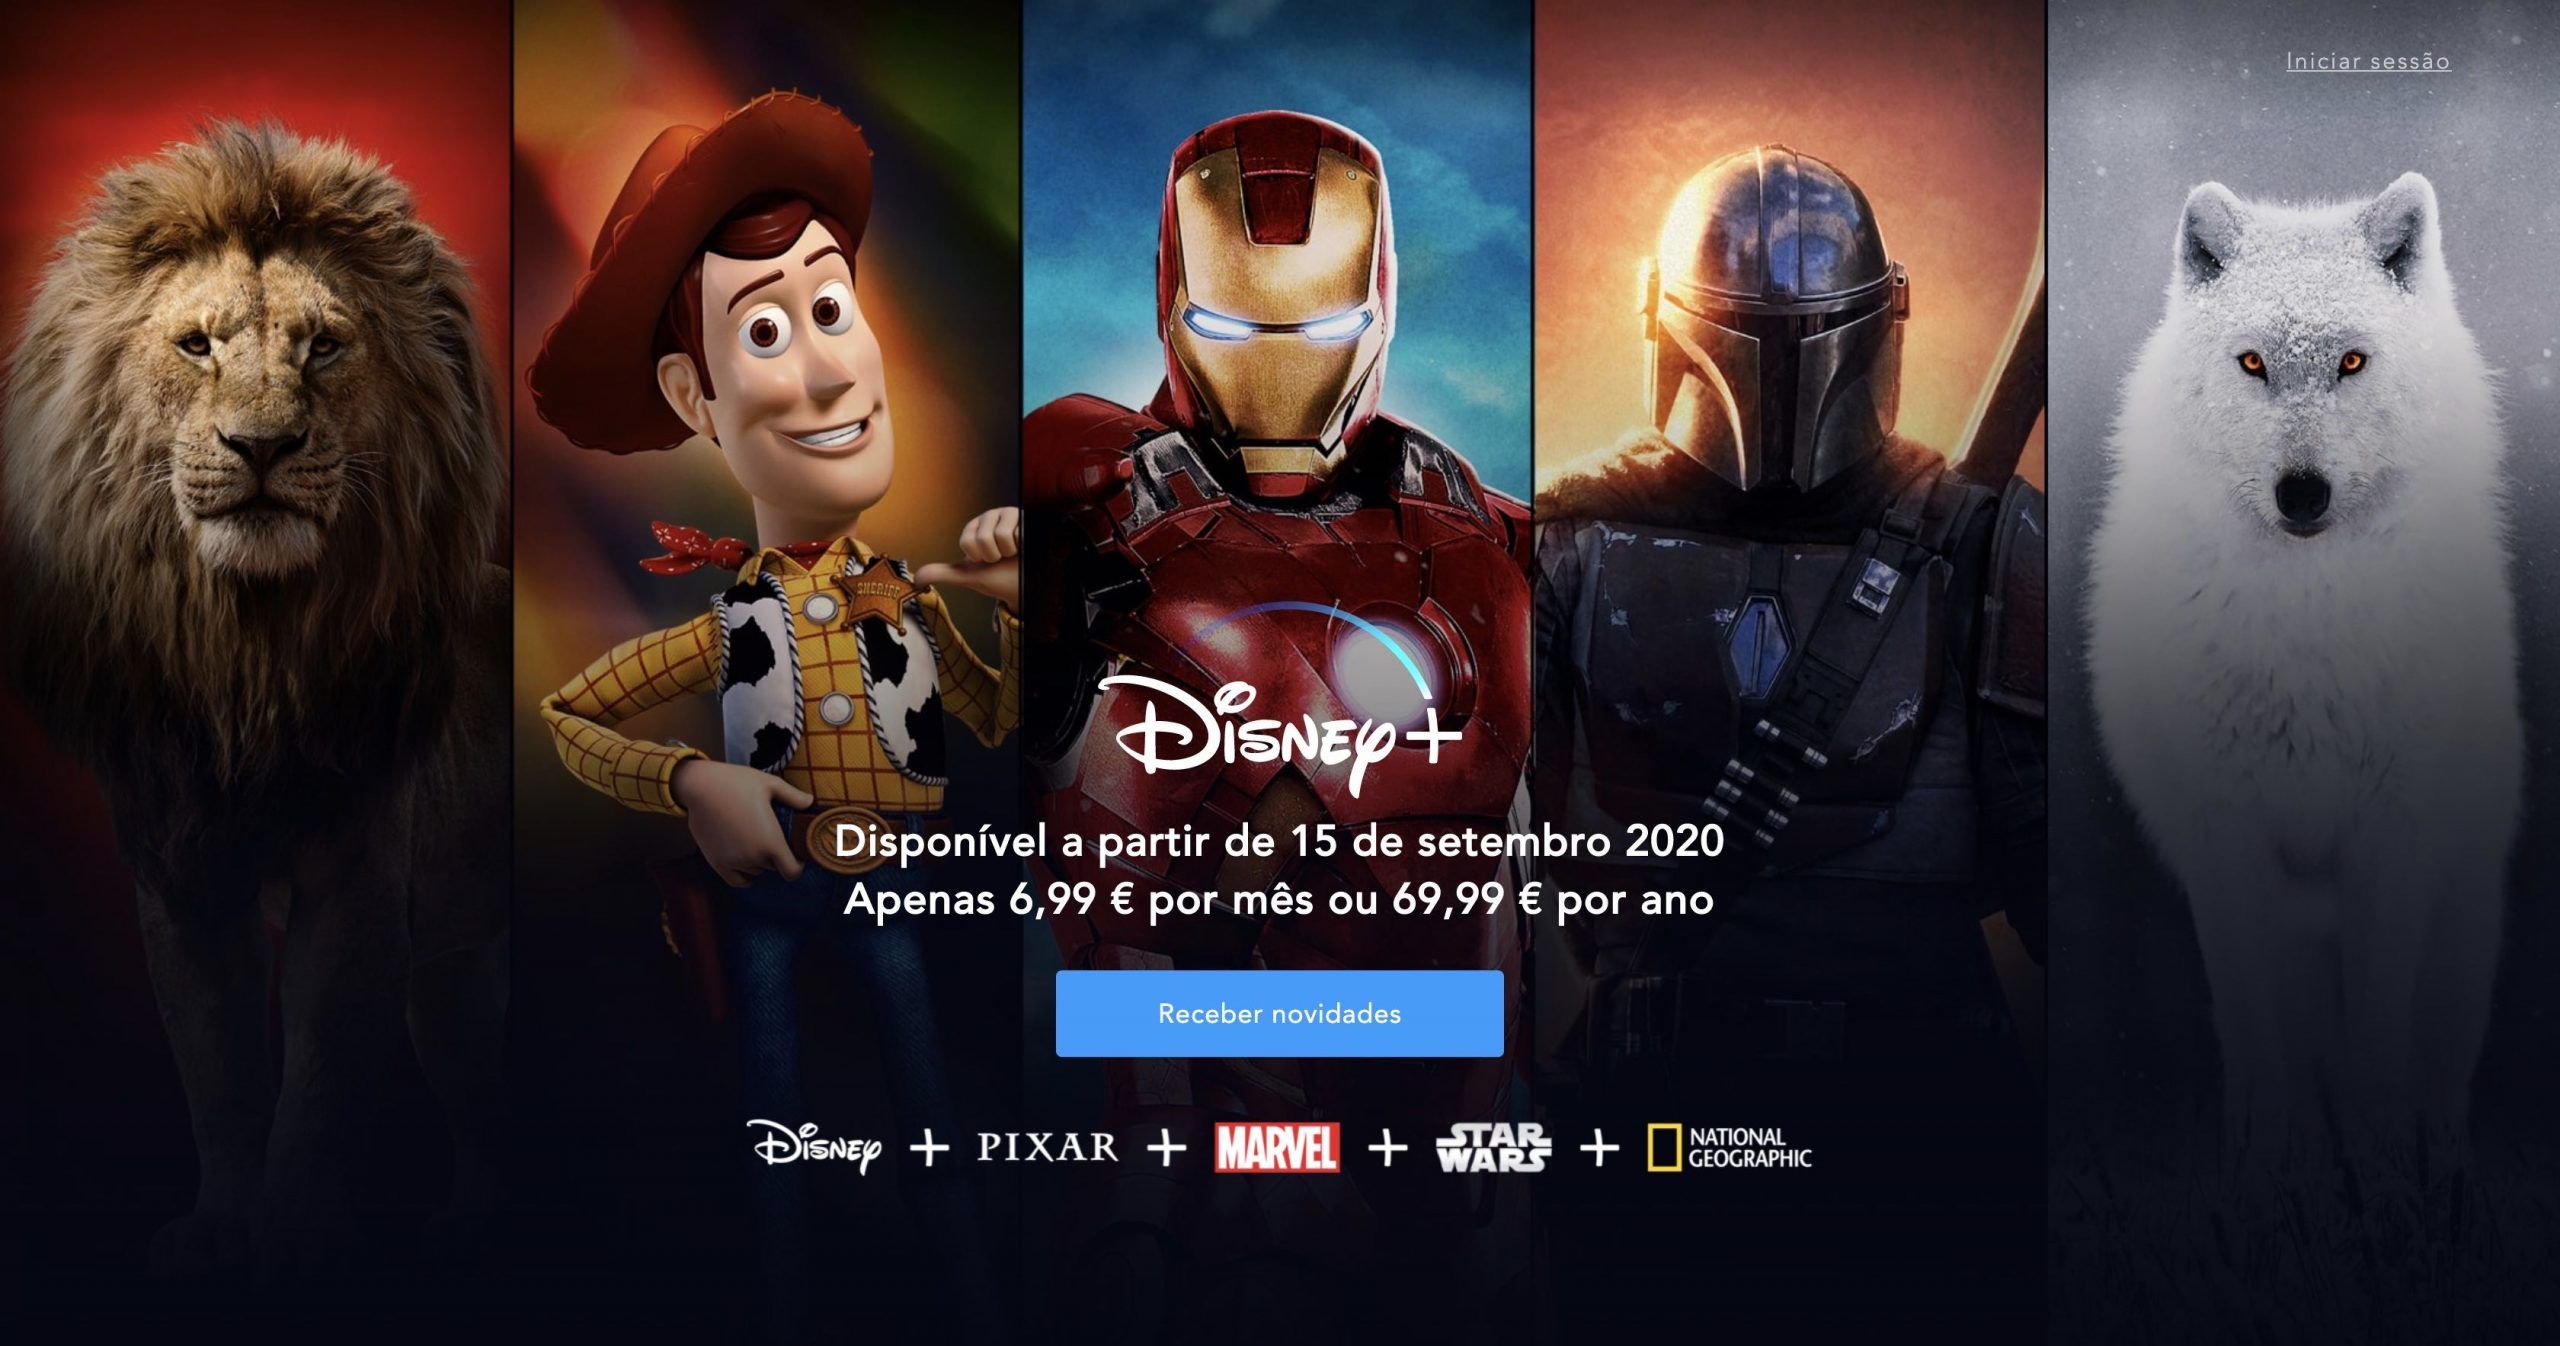 Disney-plus-2020-3